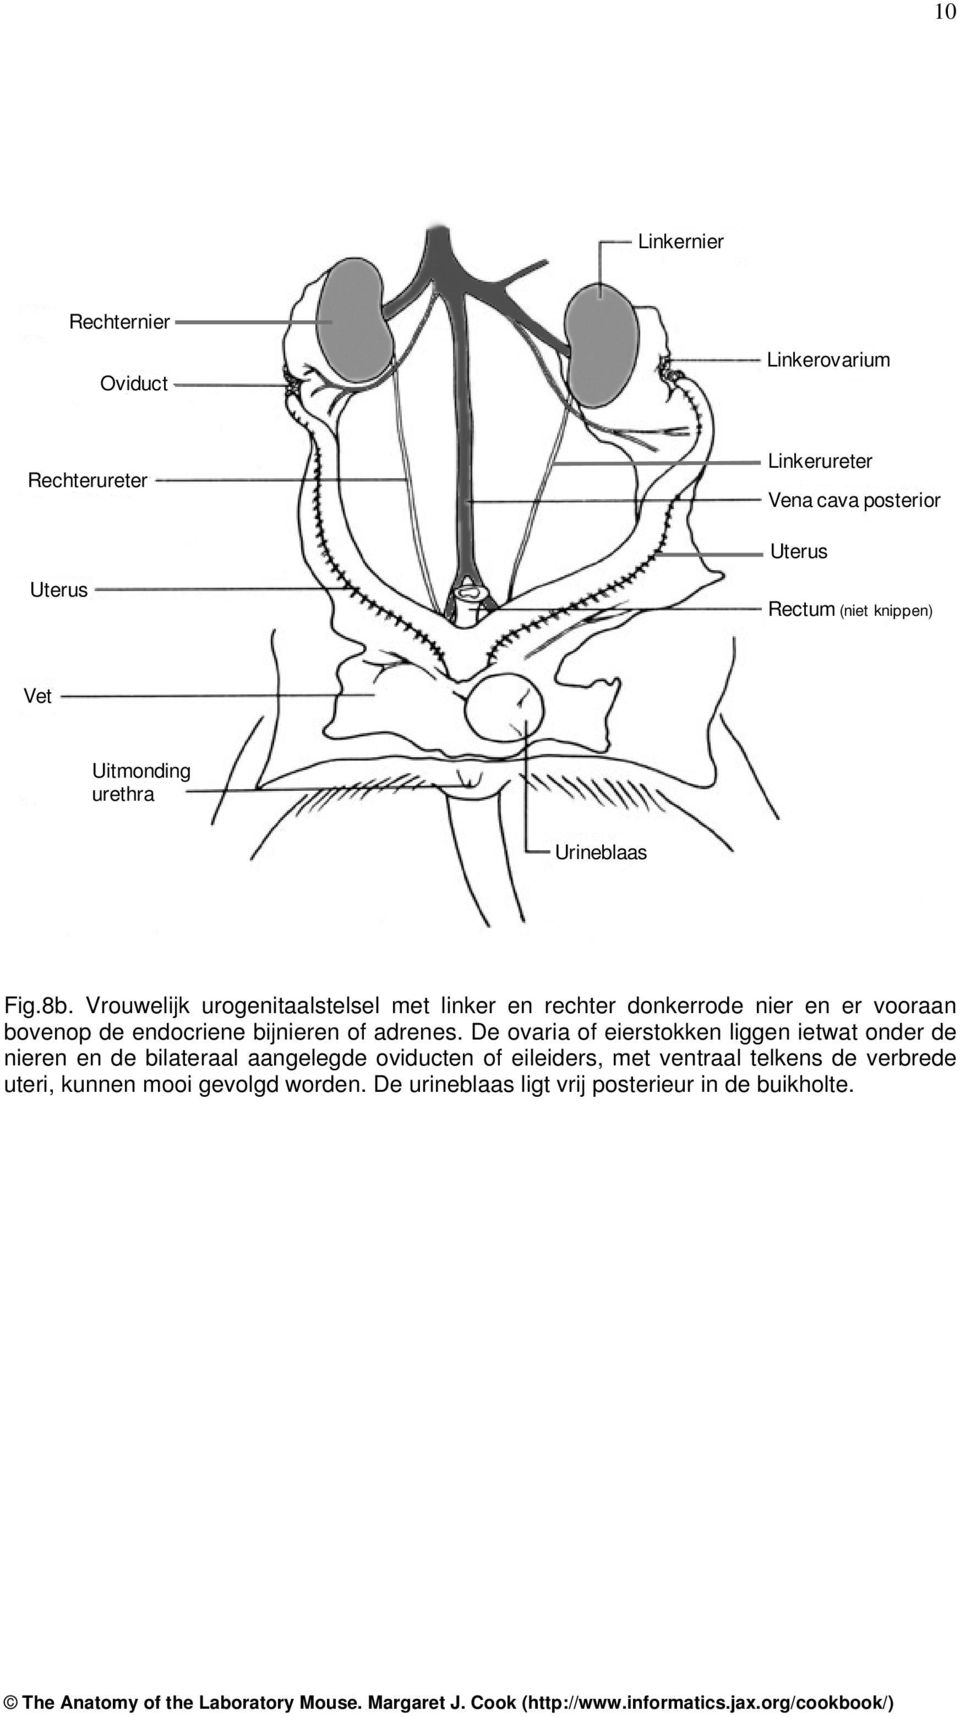 Vrouwelijk urogenitaalstelsel met linker en rechter donkerrode nier en er vooraan bovenop de endocriene bijnieren of adrenes.